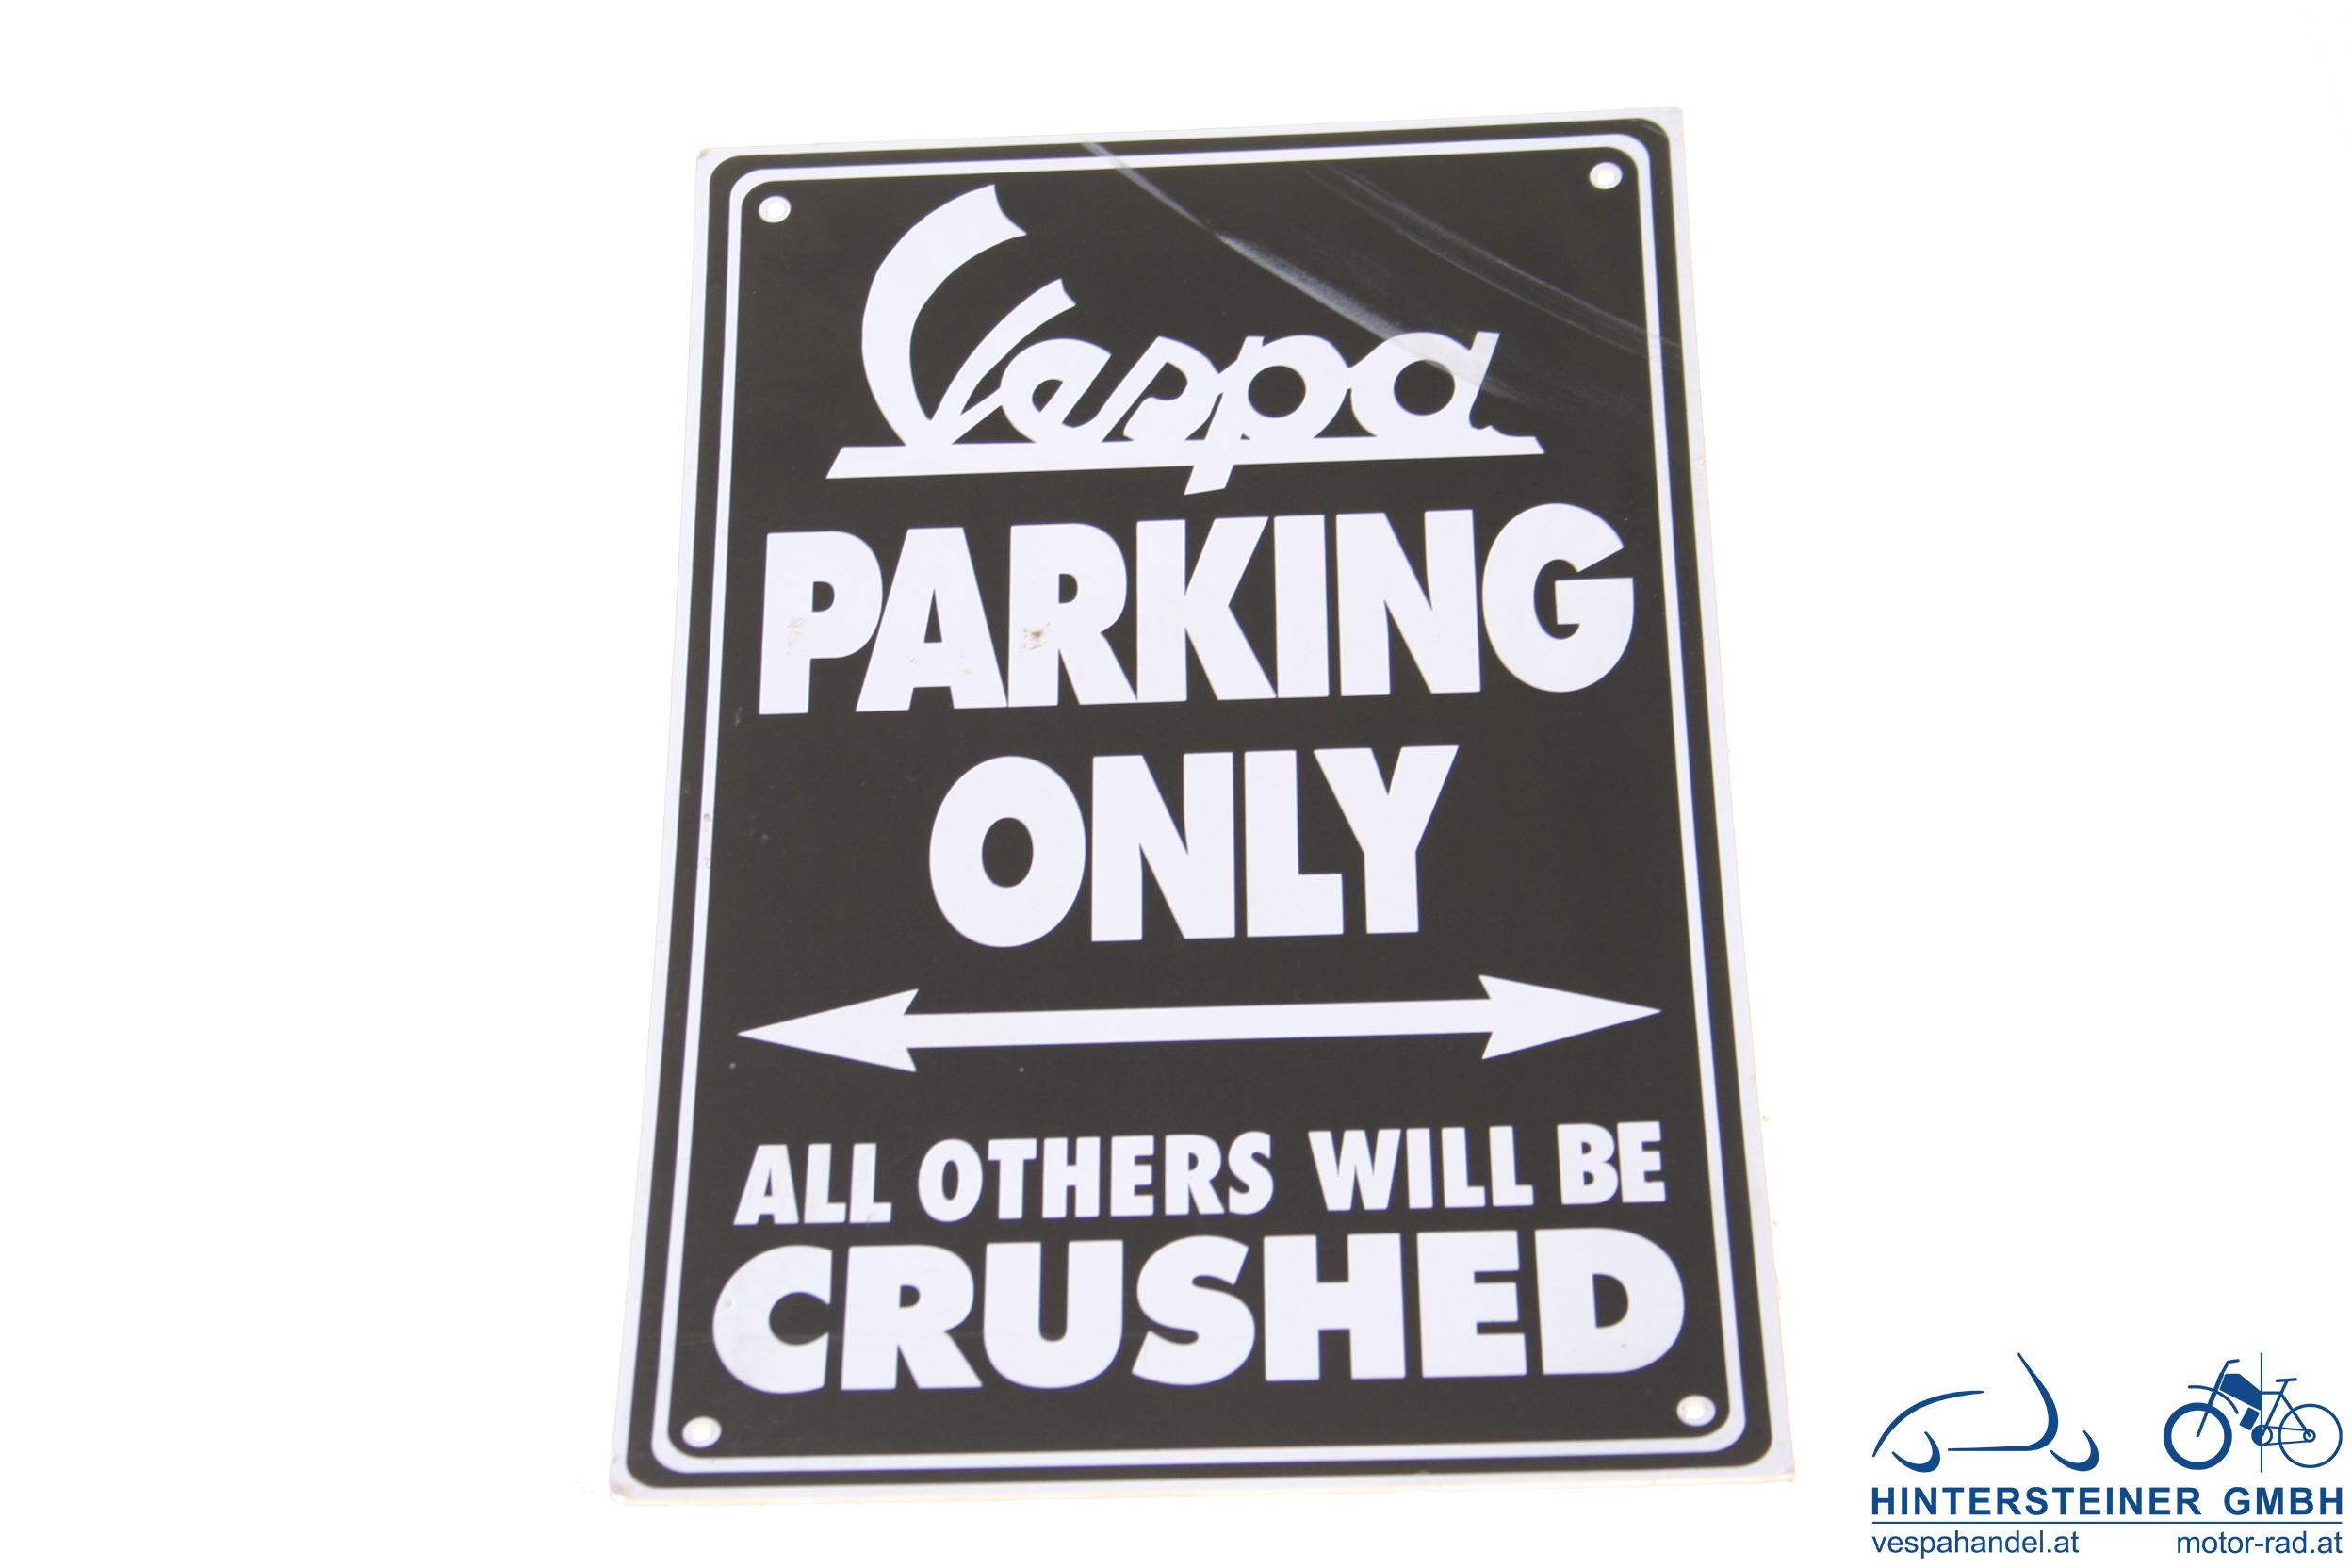 Schild "Vespa parking only", aus wetterfestem PVC, 40x25cm